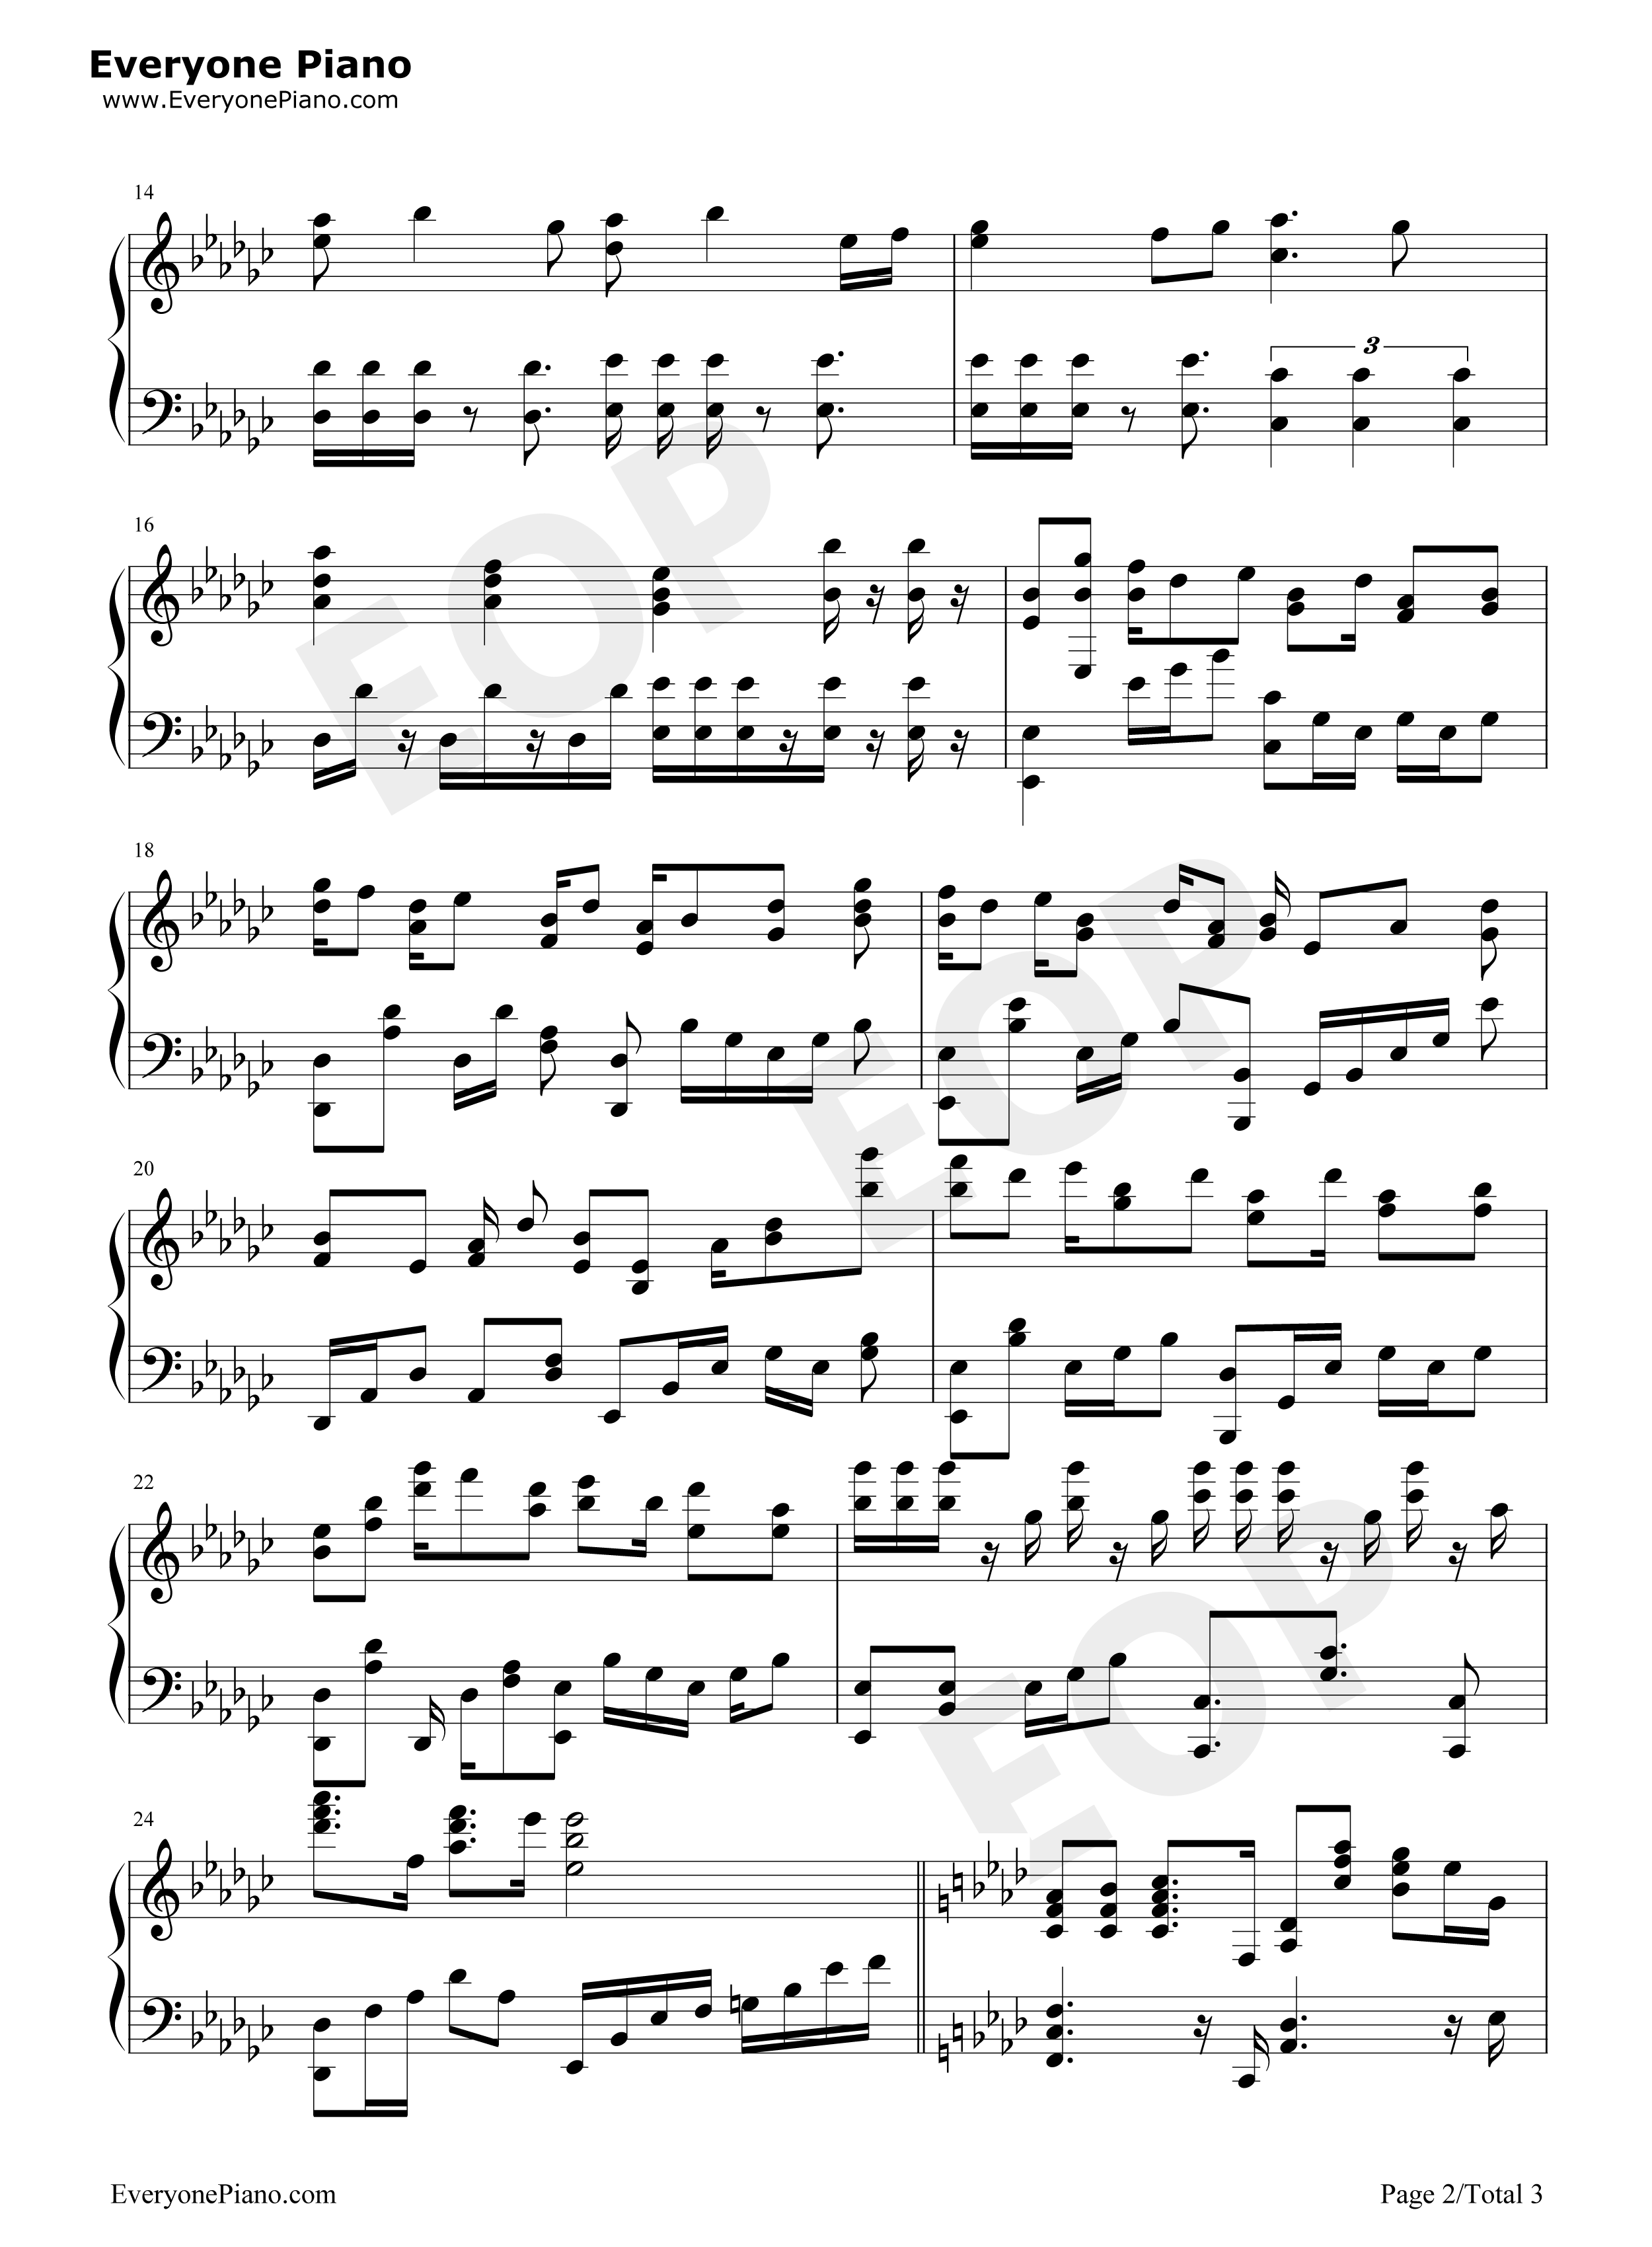 Theme of SSS钢琴谱-麻枝准2